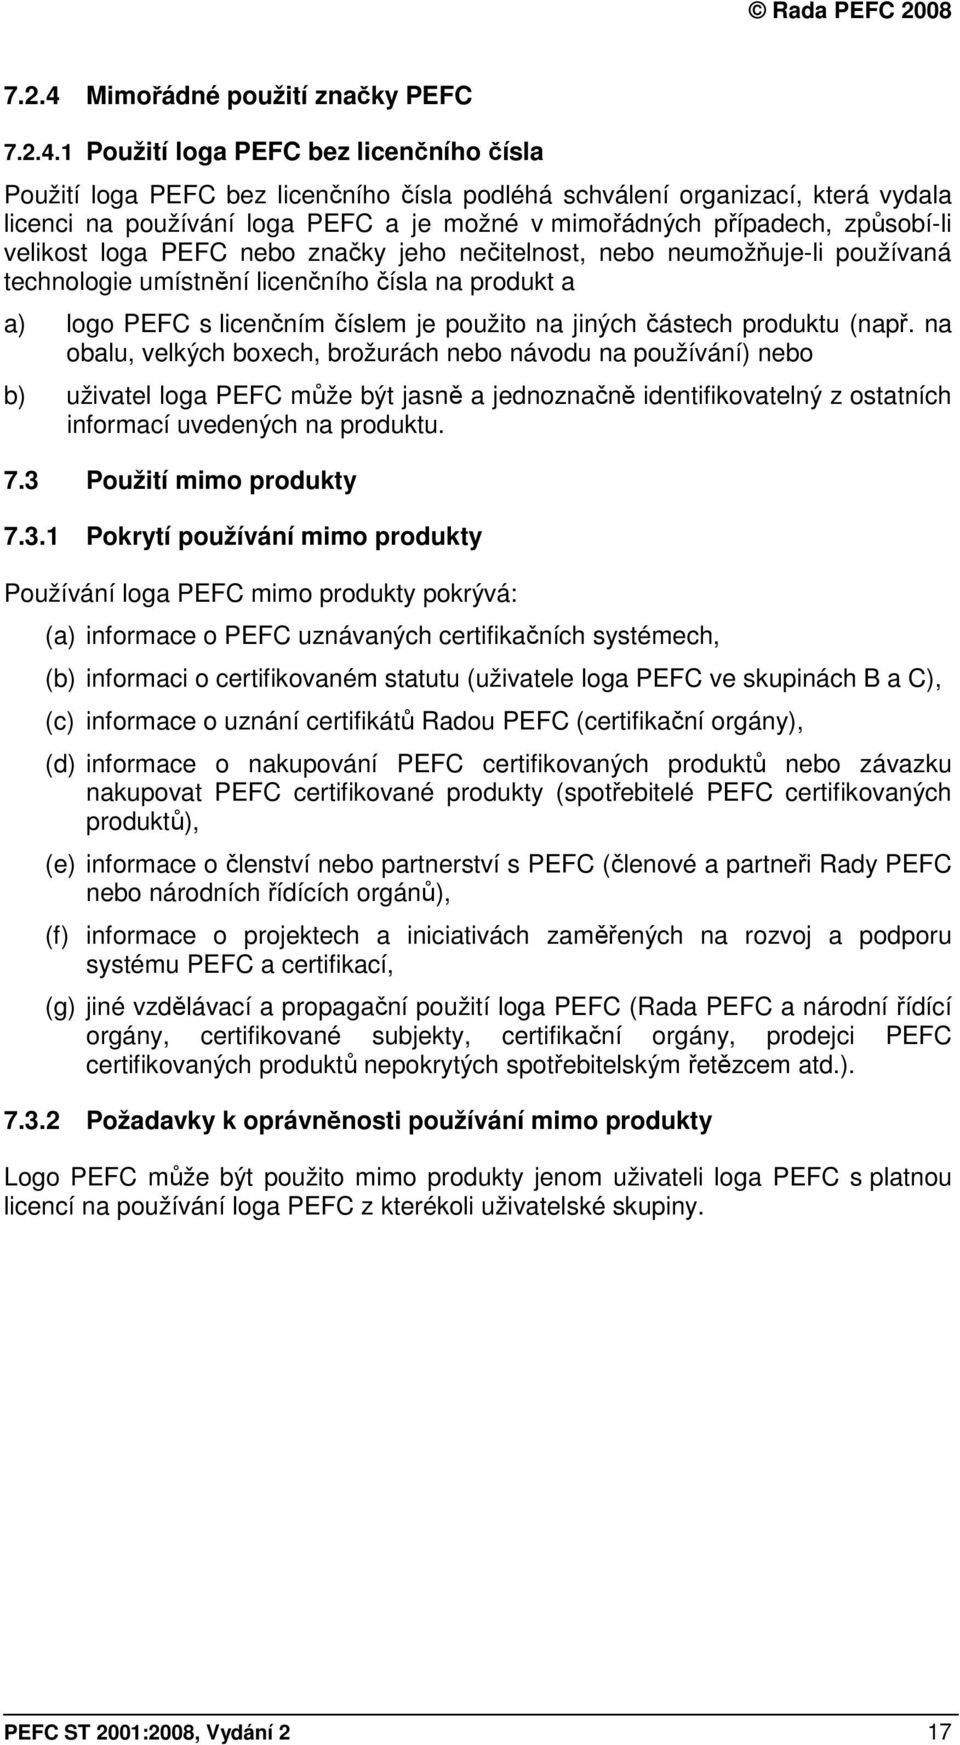 1 Použití loga PEFC bez licenčního čísla Použití loga PEFC bez licenčního čísla podléhá schválení organizací, která vydala licenci na používání loga PEFC a je možné v mimořádných případech,